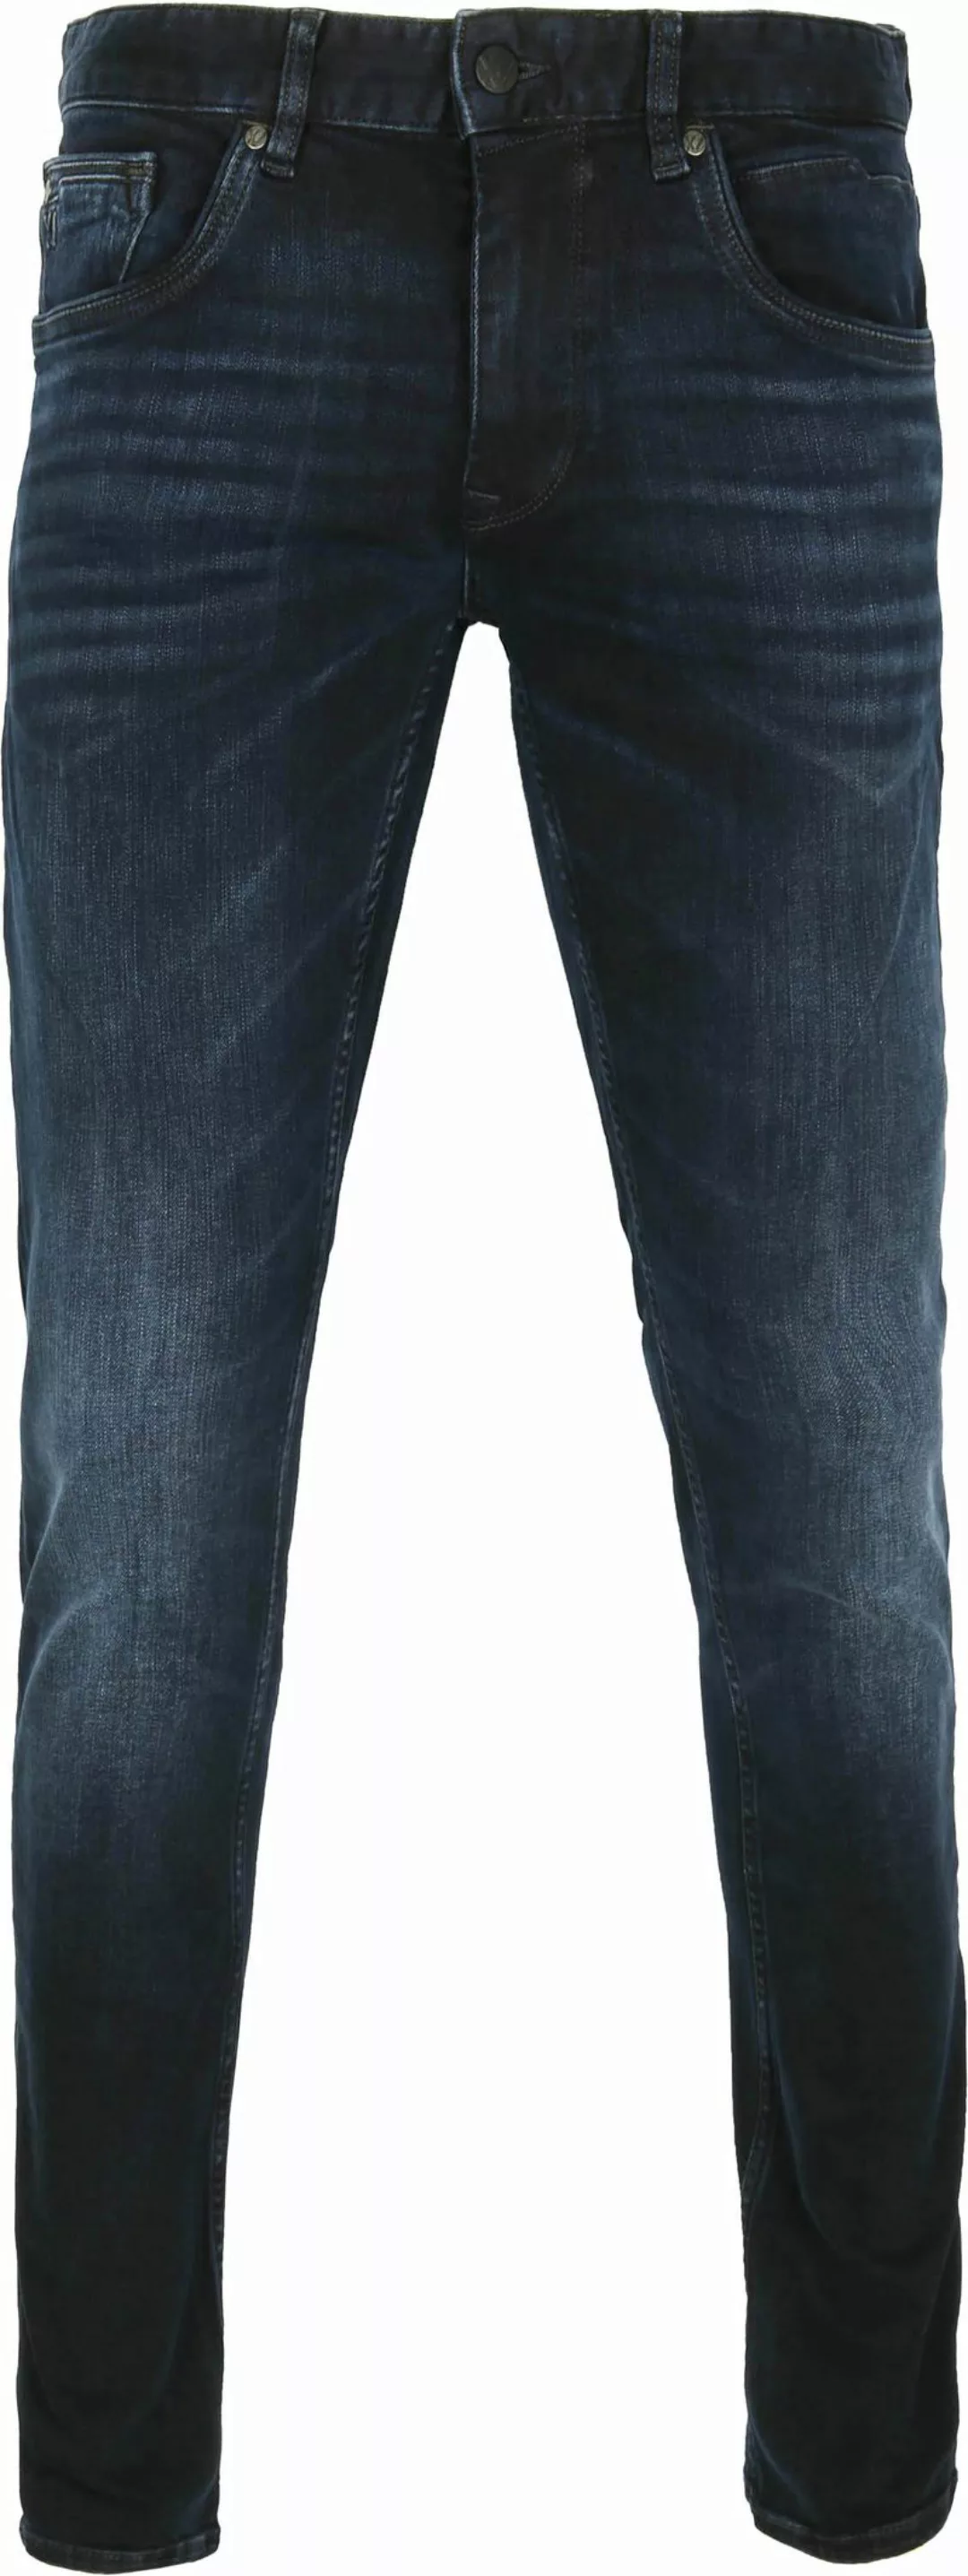 PME Legend XV Jeans Blue Black PTR150 - Größe W 33 - L 30 günstig online kaufen